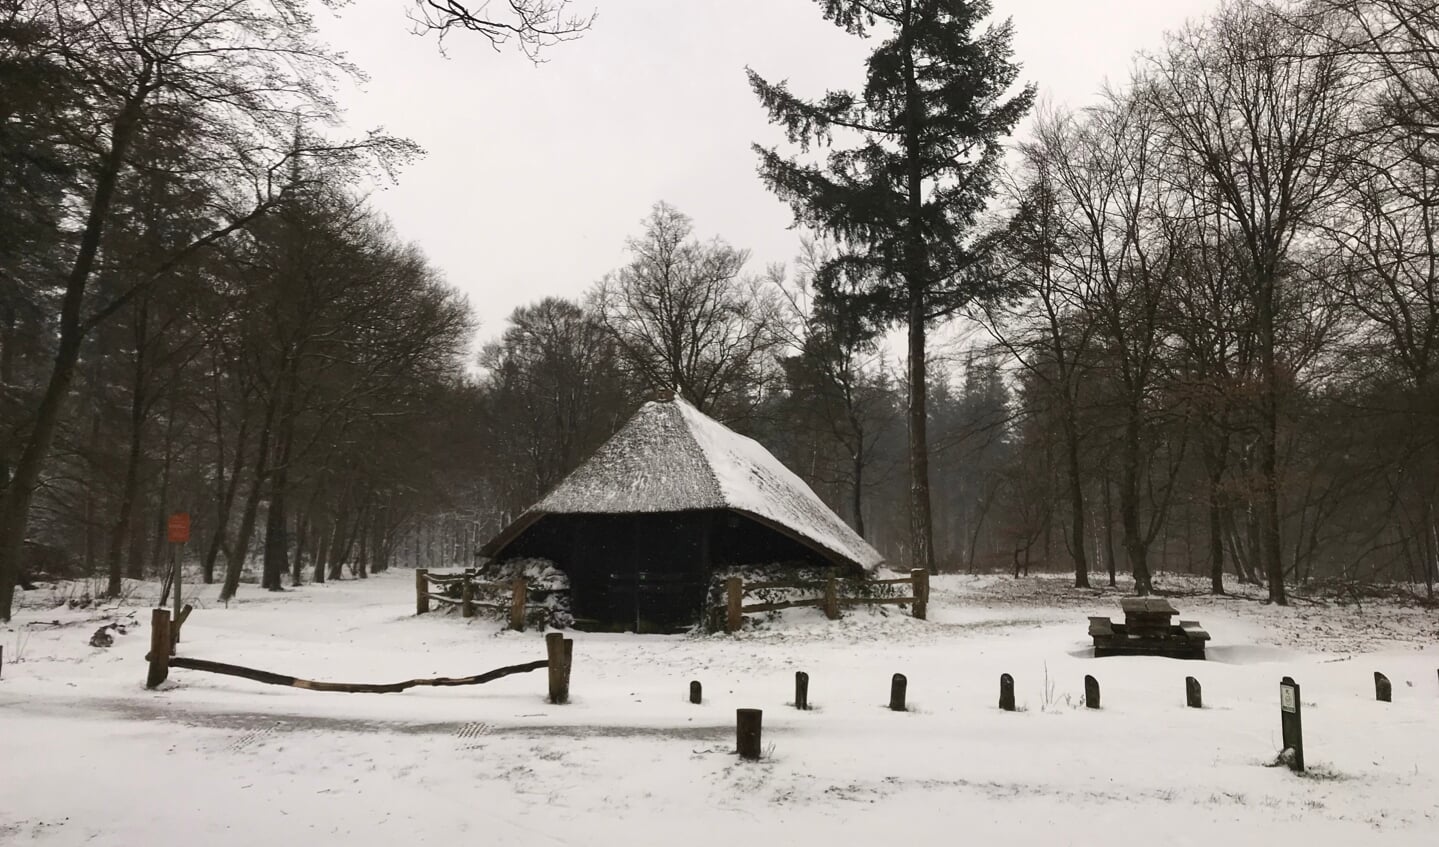 Een mooie winterfoto.
Zondagochtend gemaakt tijdens m’n rondje hardlopen.  De mooie schaapskooi op Boeschoten. Gemaakt door Gea van der Huure.